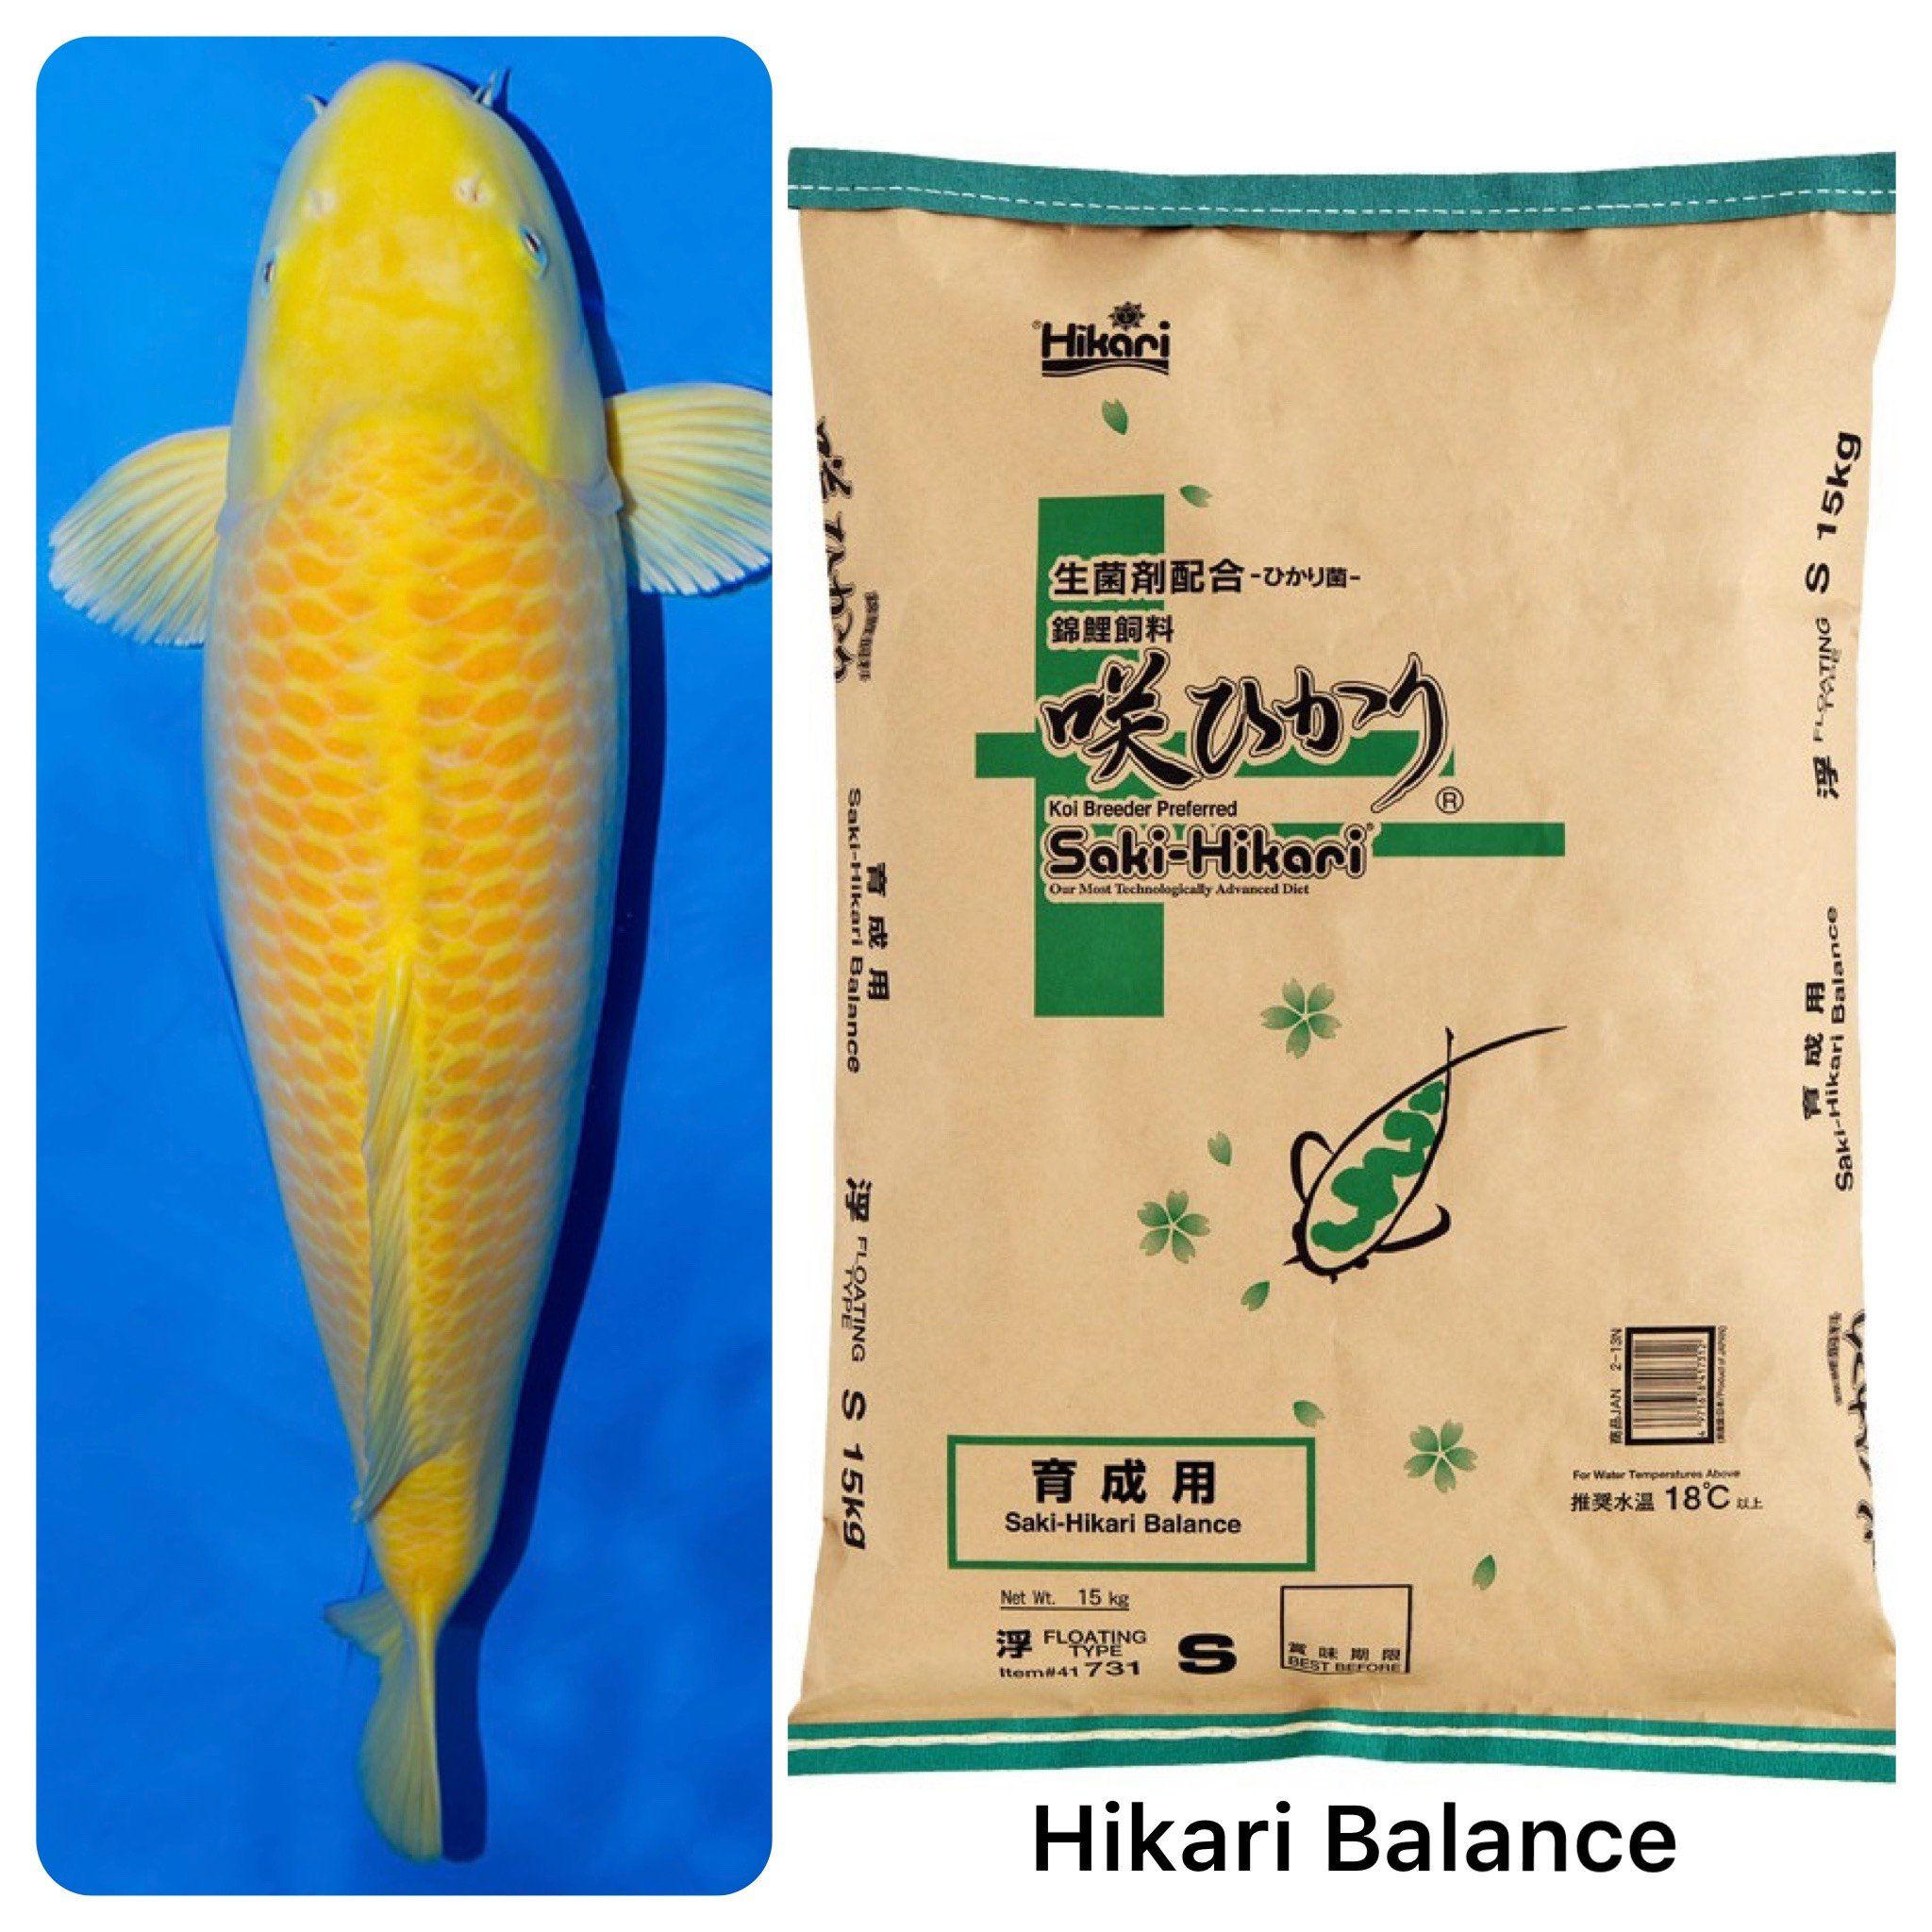 Hướng dẫn sử dụng Hikari Balance hiệu quả